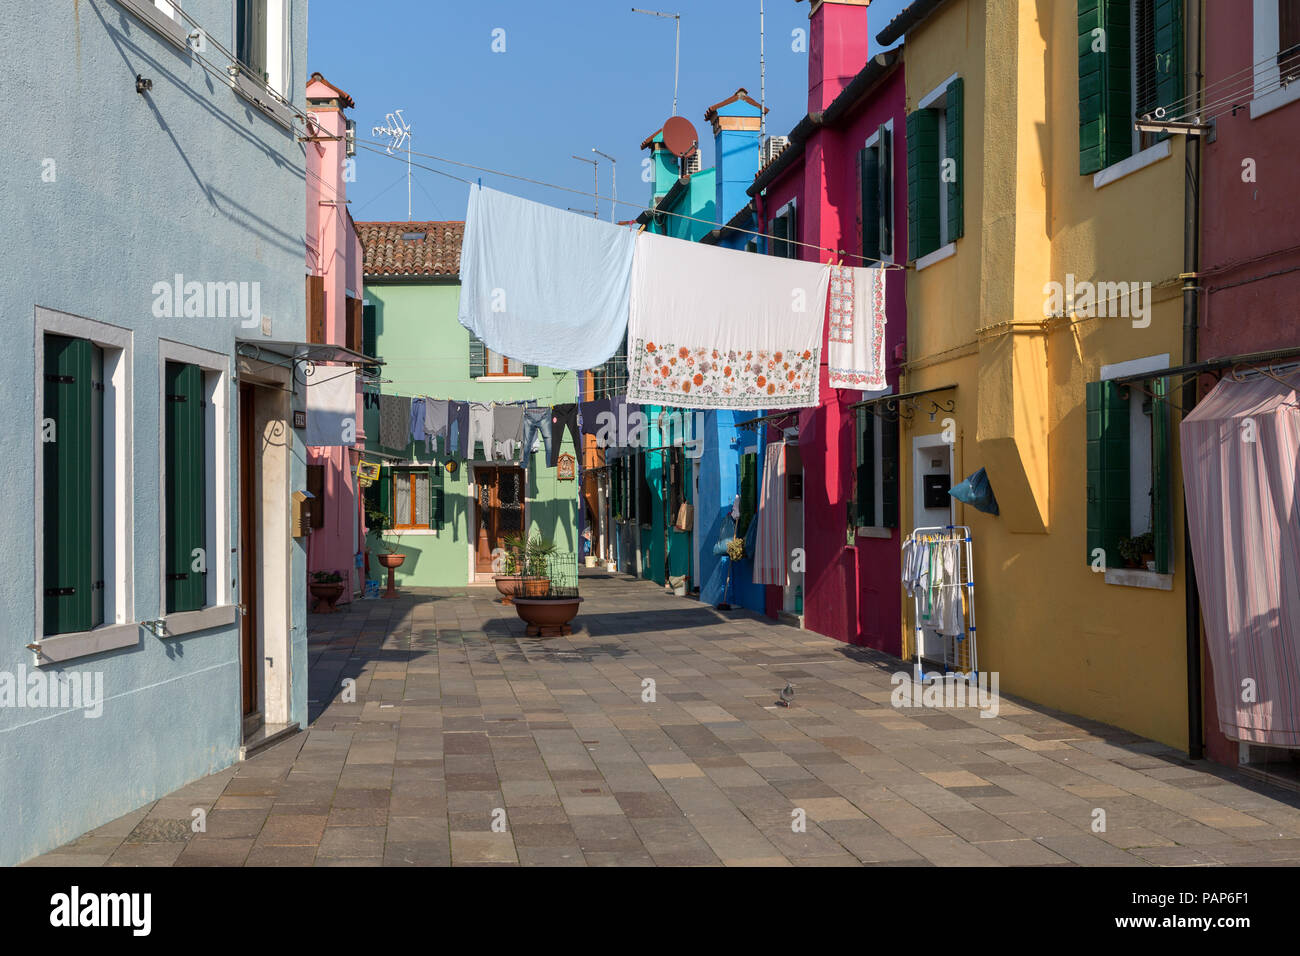 L'Italia, la laguna di Venezia e Burano, case colorate e biancheria stesa ad asciugare Foto Stock